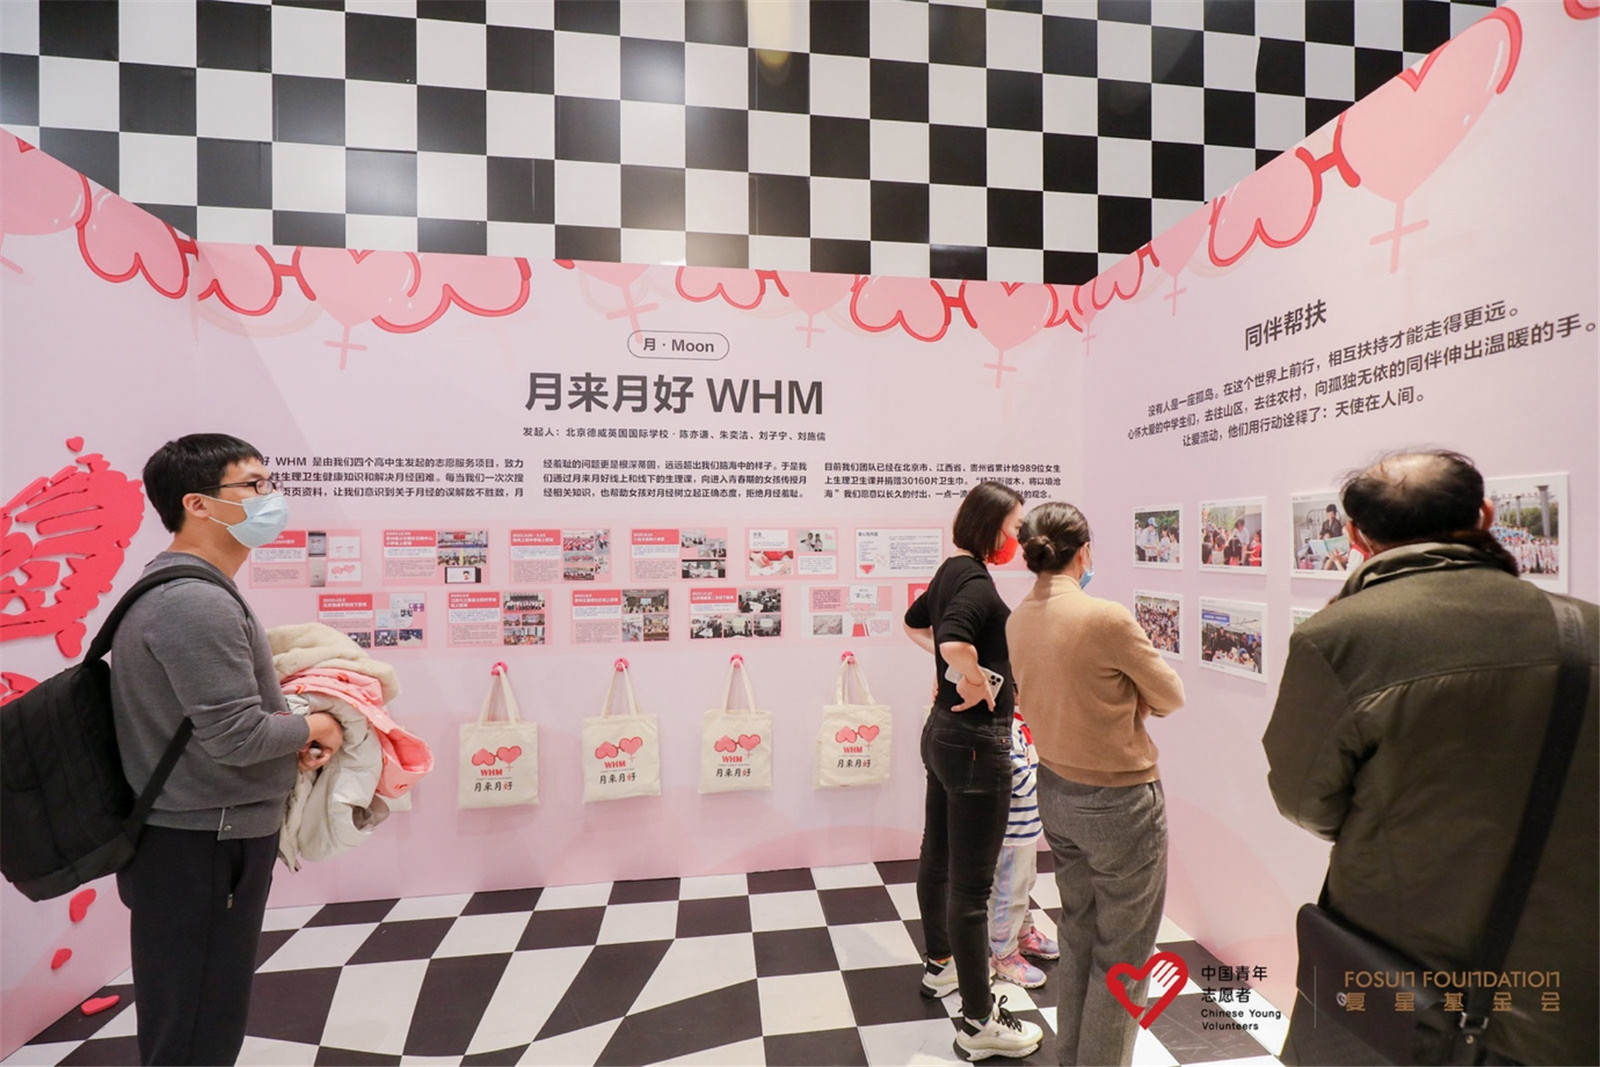 在上海举办展览以提高人们对WHM的认识